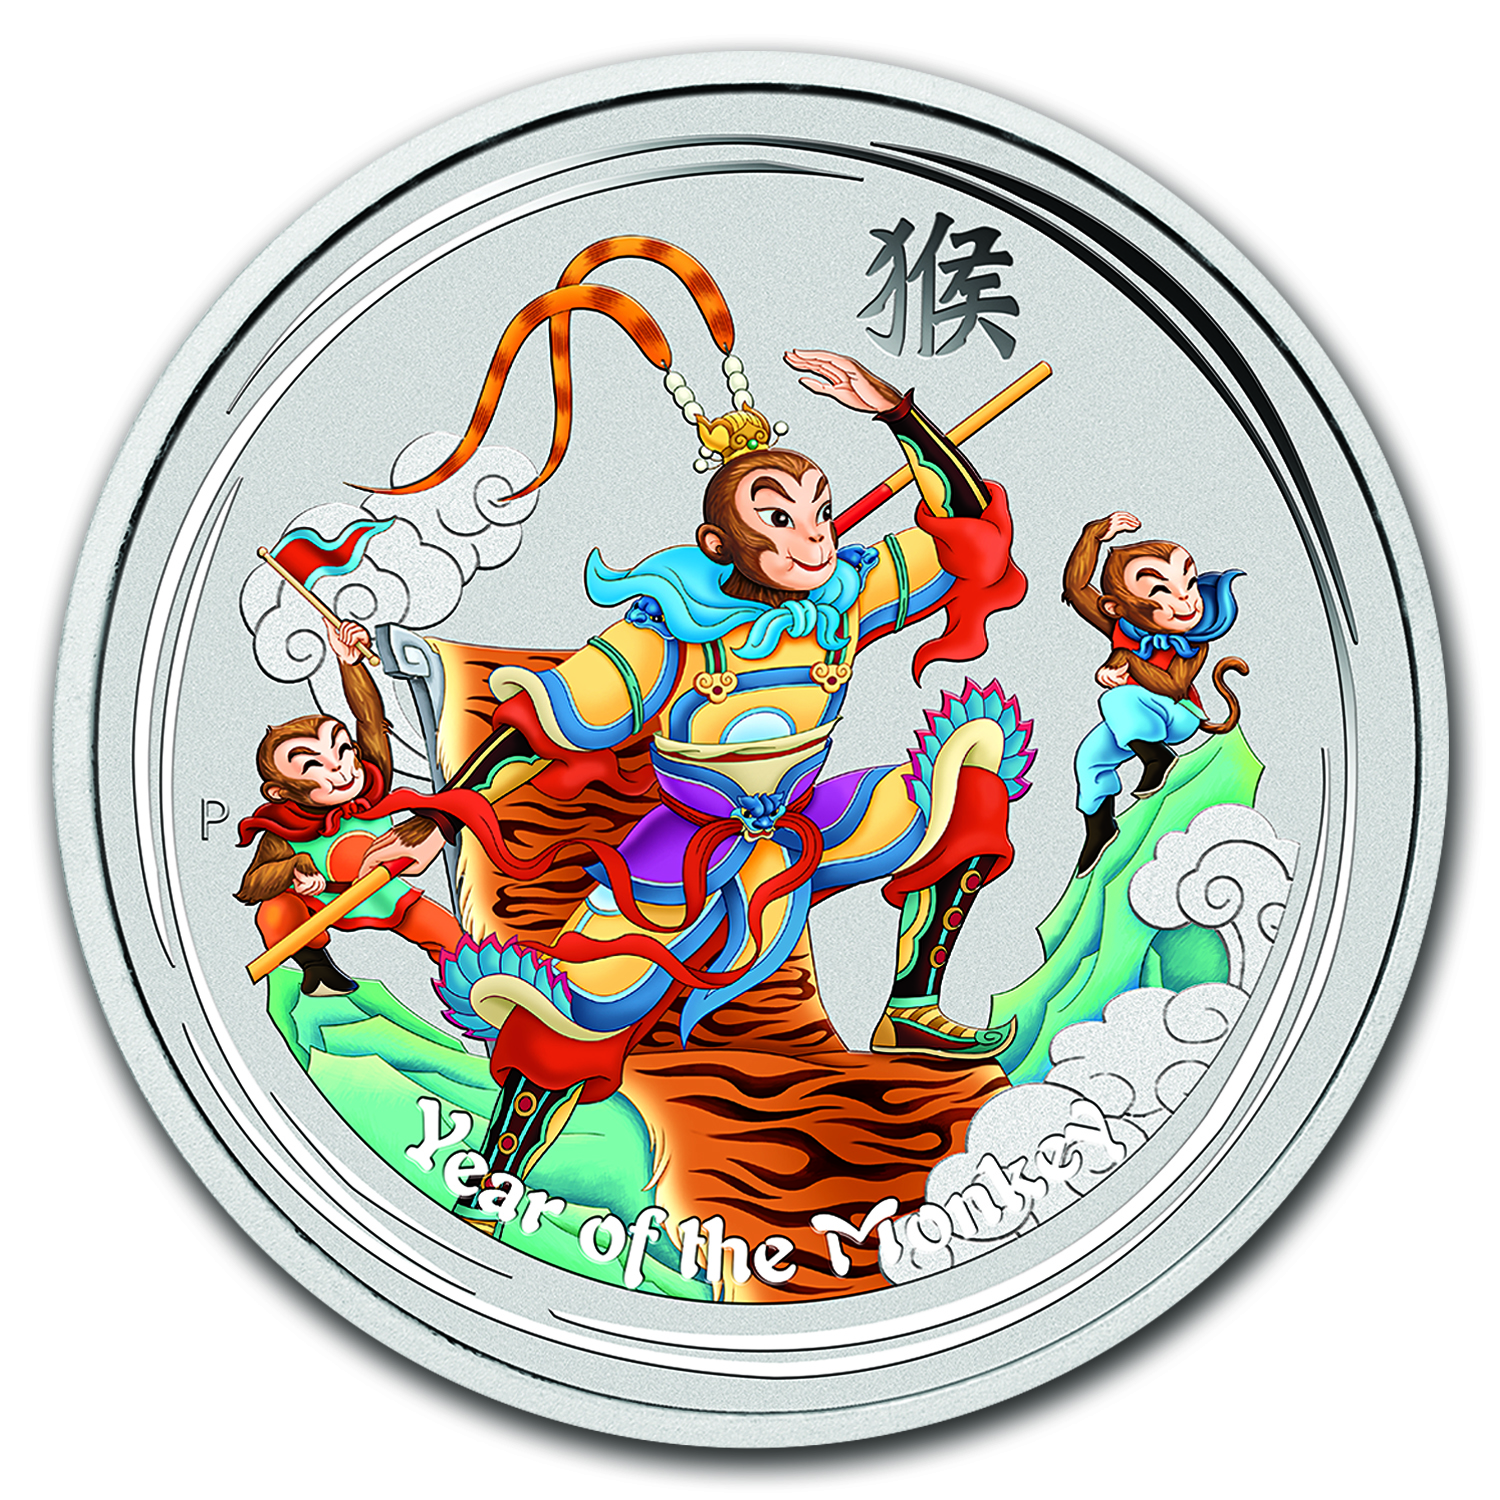 2016 Australia Silver Lunar Monkey King 1 oz Colorized Coin